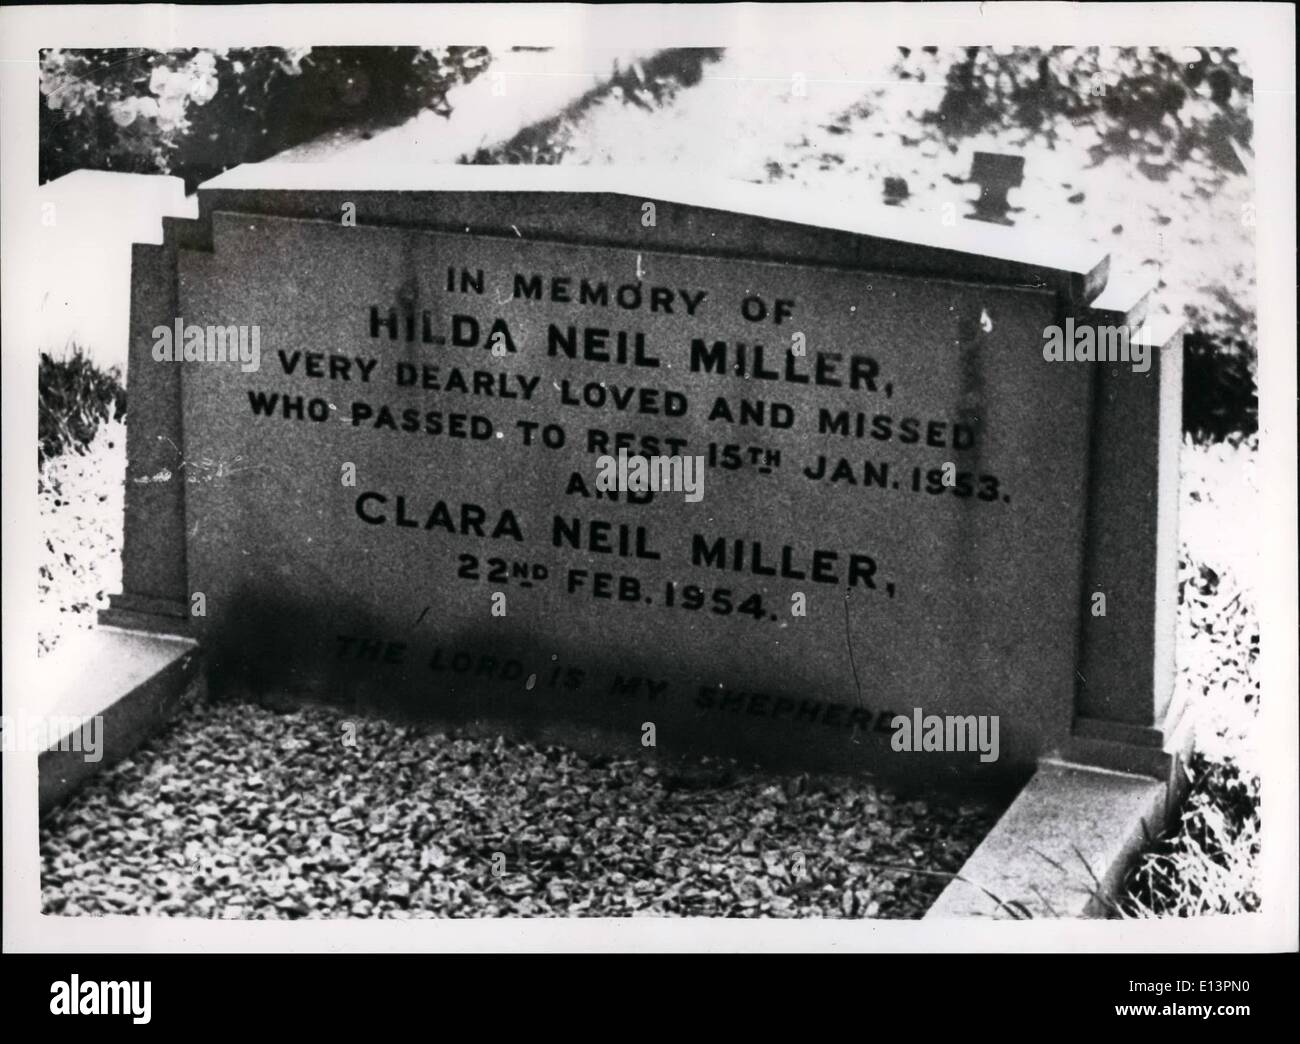 Mar. 22, 2012 - à la mémoire d'Hilda Neil Miller, très chèrement aimé et qui s'est raté à 15 janv. 1953 repos. et Clara Neil Miller 22 10 févr. 1954. Banque D'Images